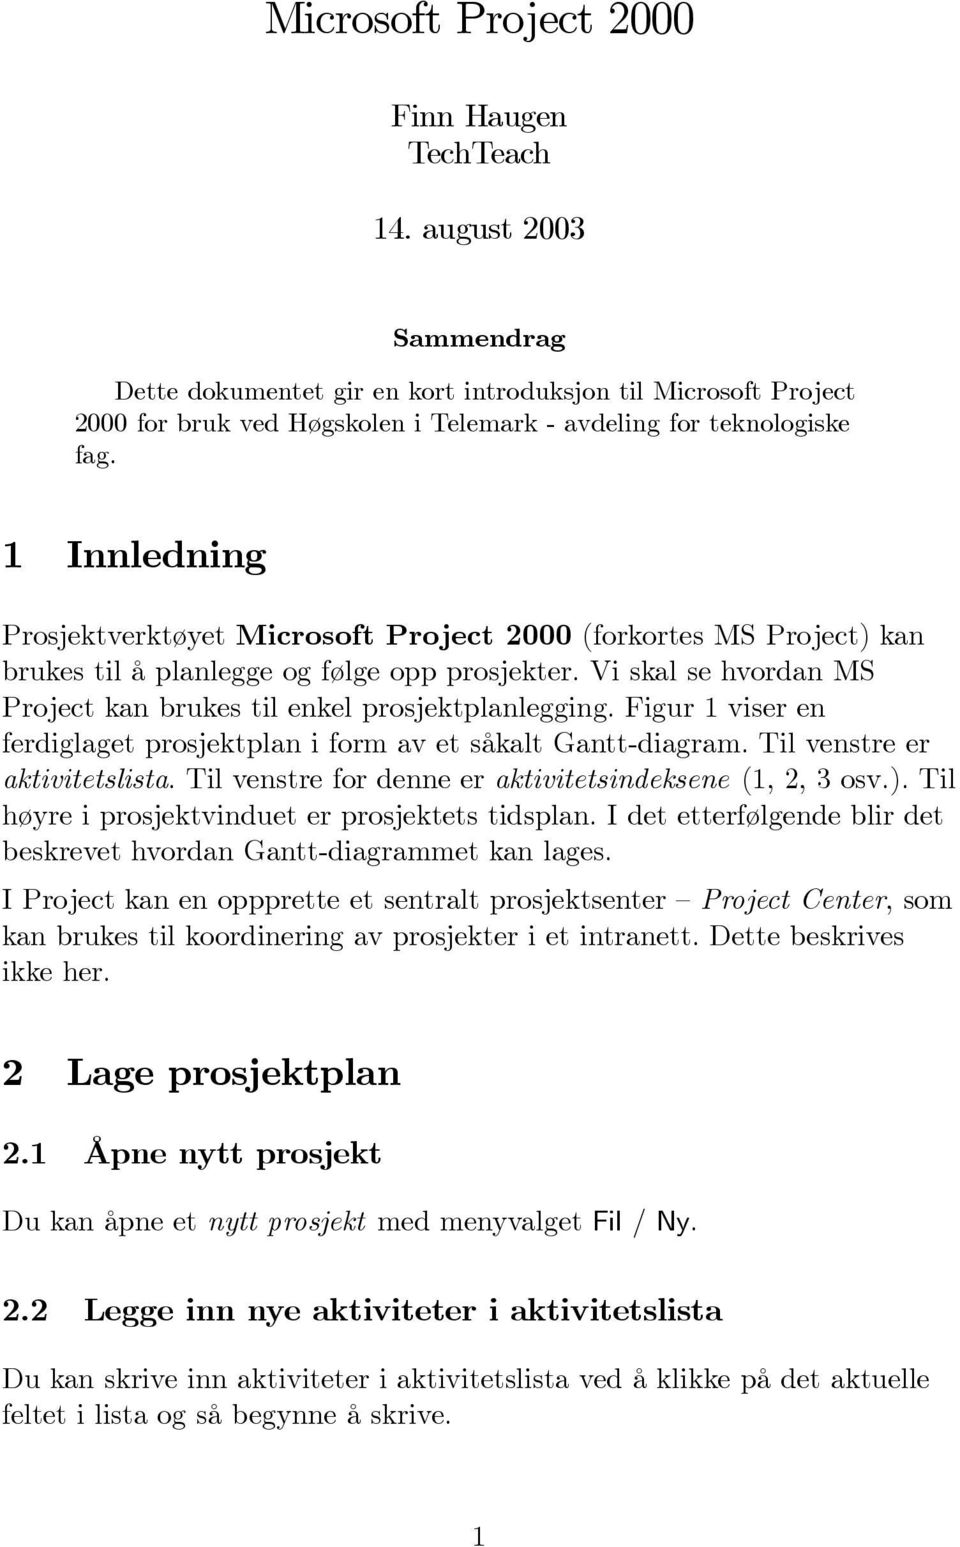 1 Innledning Prosjektverktøyet Microsoft Project 2000 (forkortes MS Project) kan brukes til å planlegge og følge opp prosjekter. Vi skal se hvordan MS Project kan brukes til enkel prosjektplanlegging.